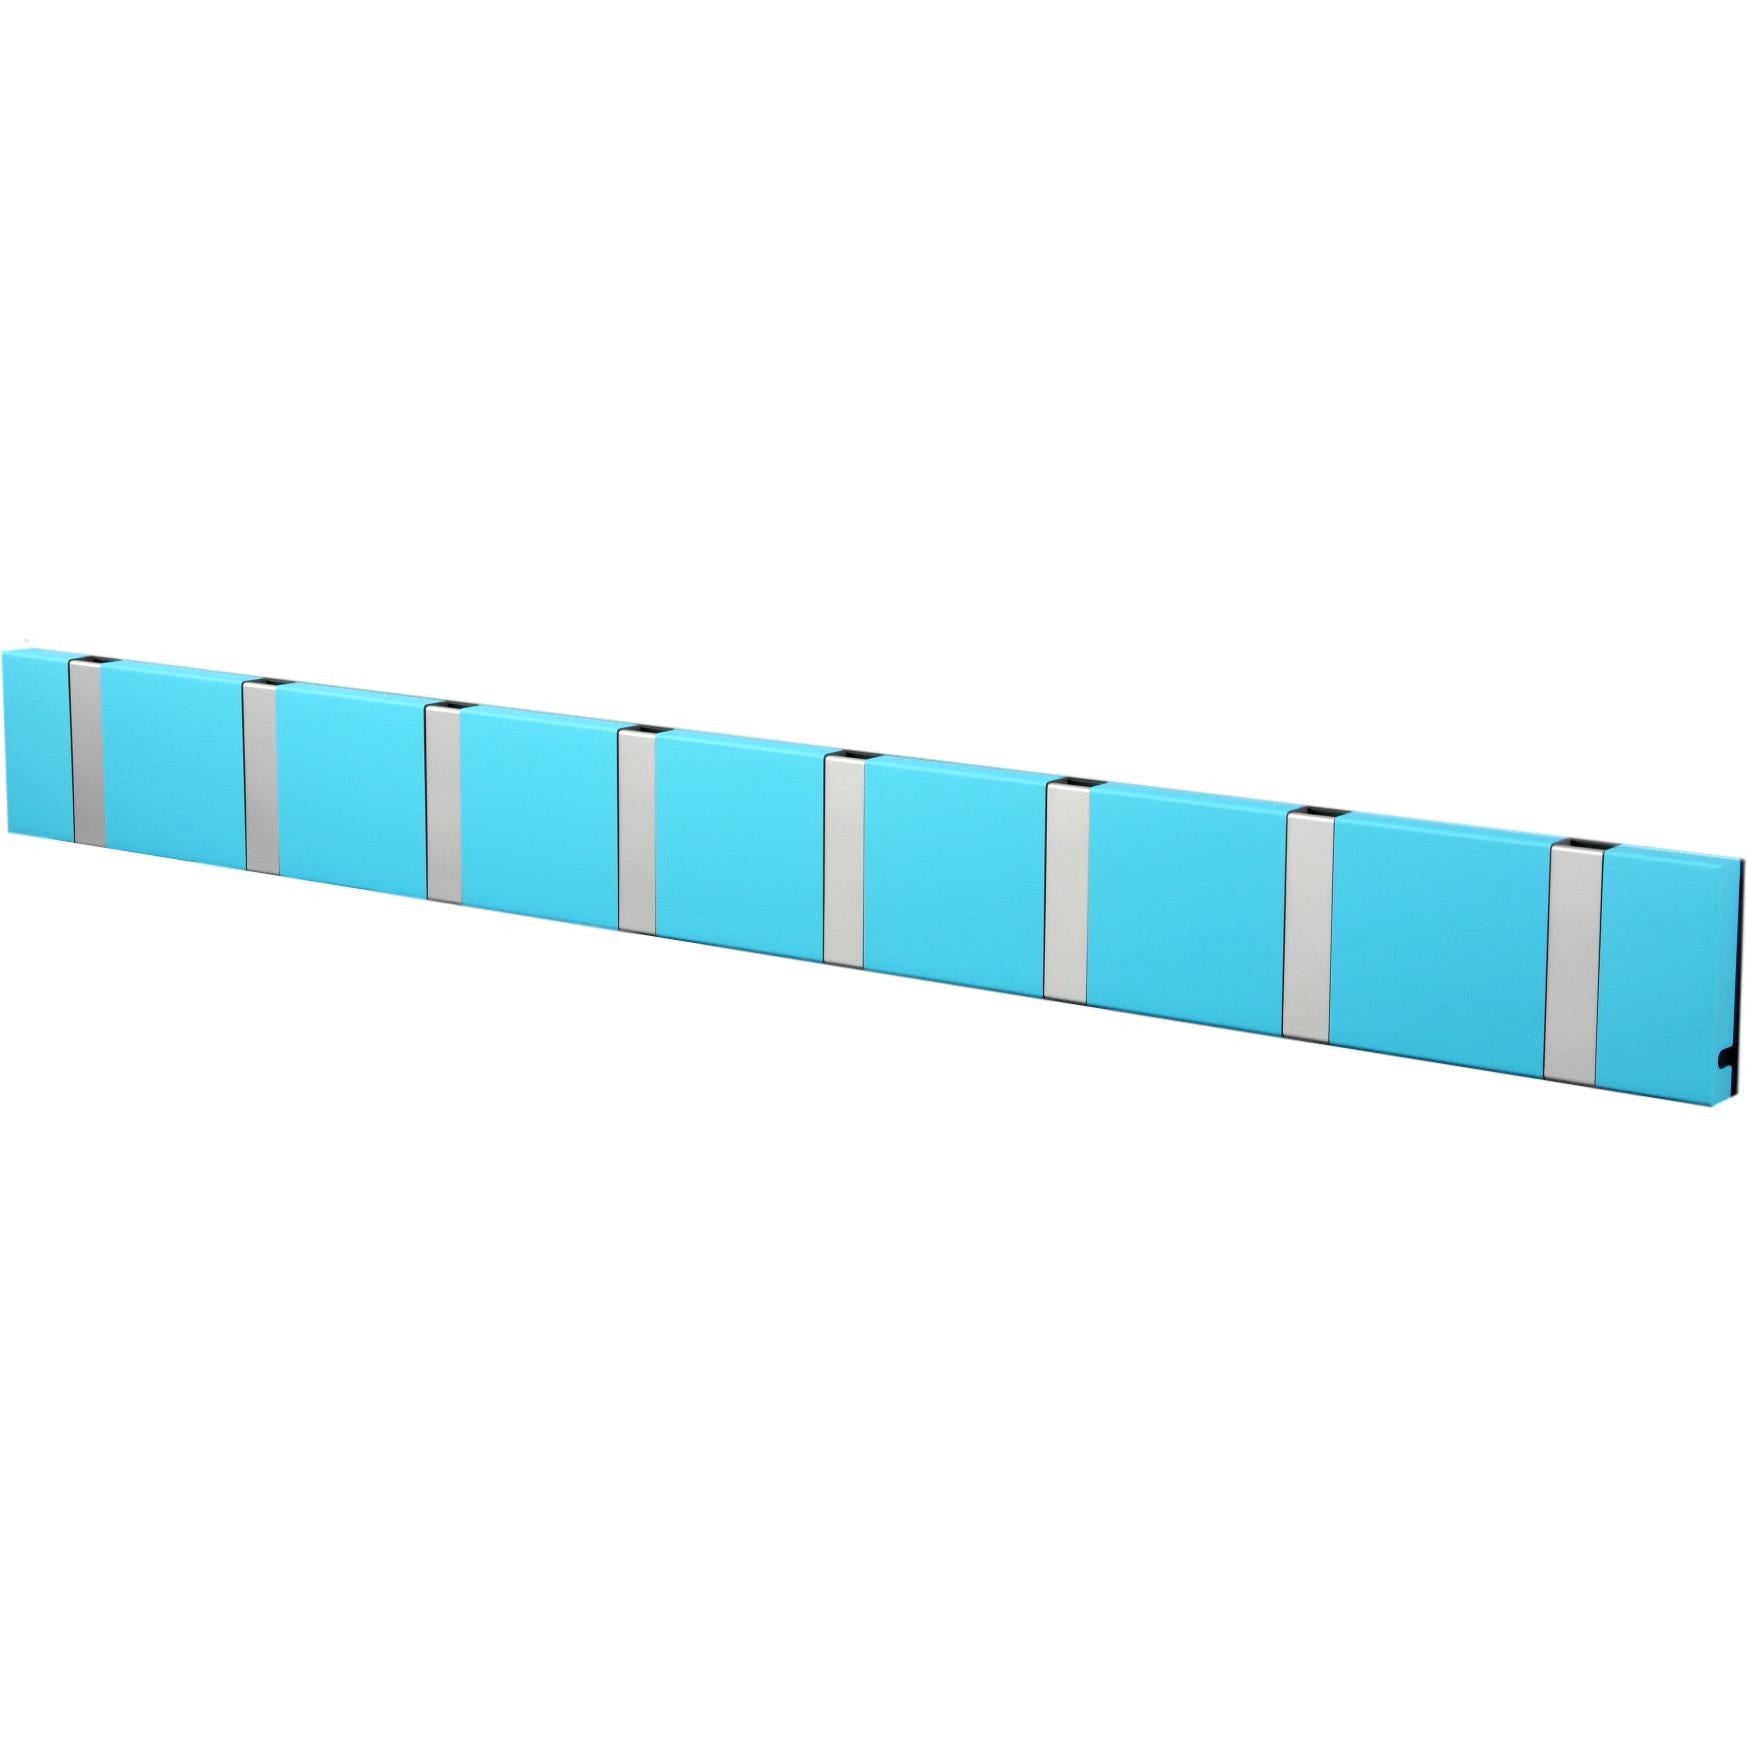 Loca Knax horizontale kaderrek 8 haken, turquoise/grijs